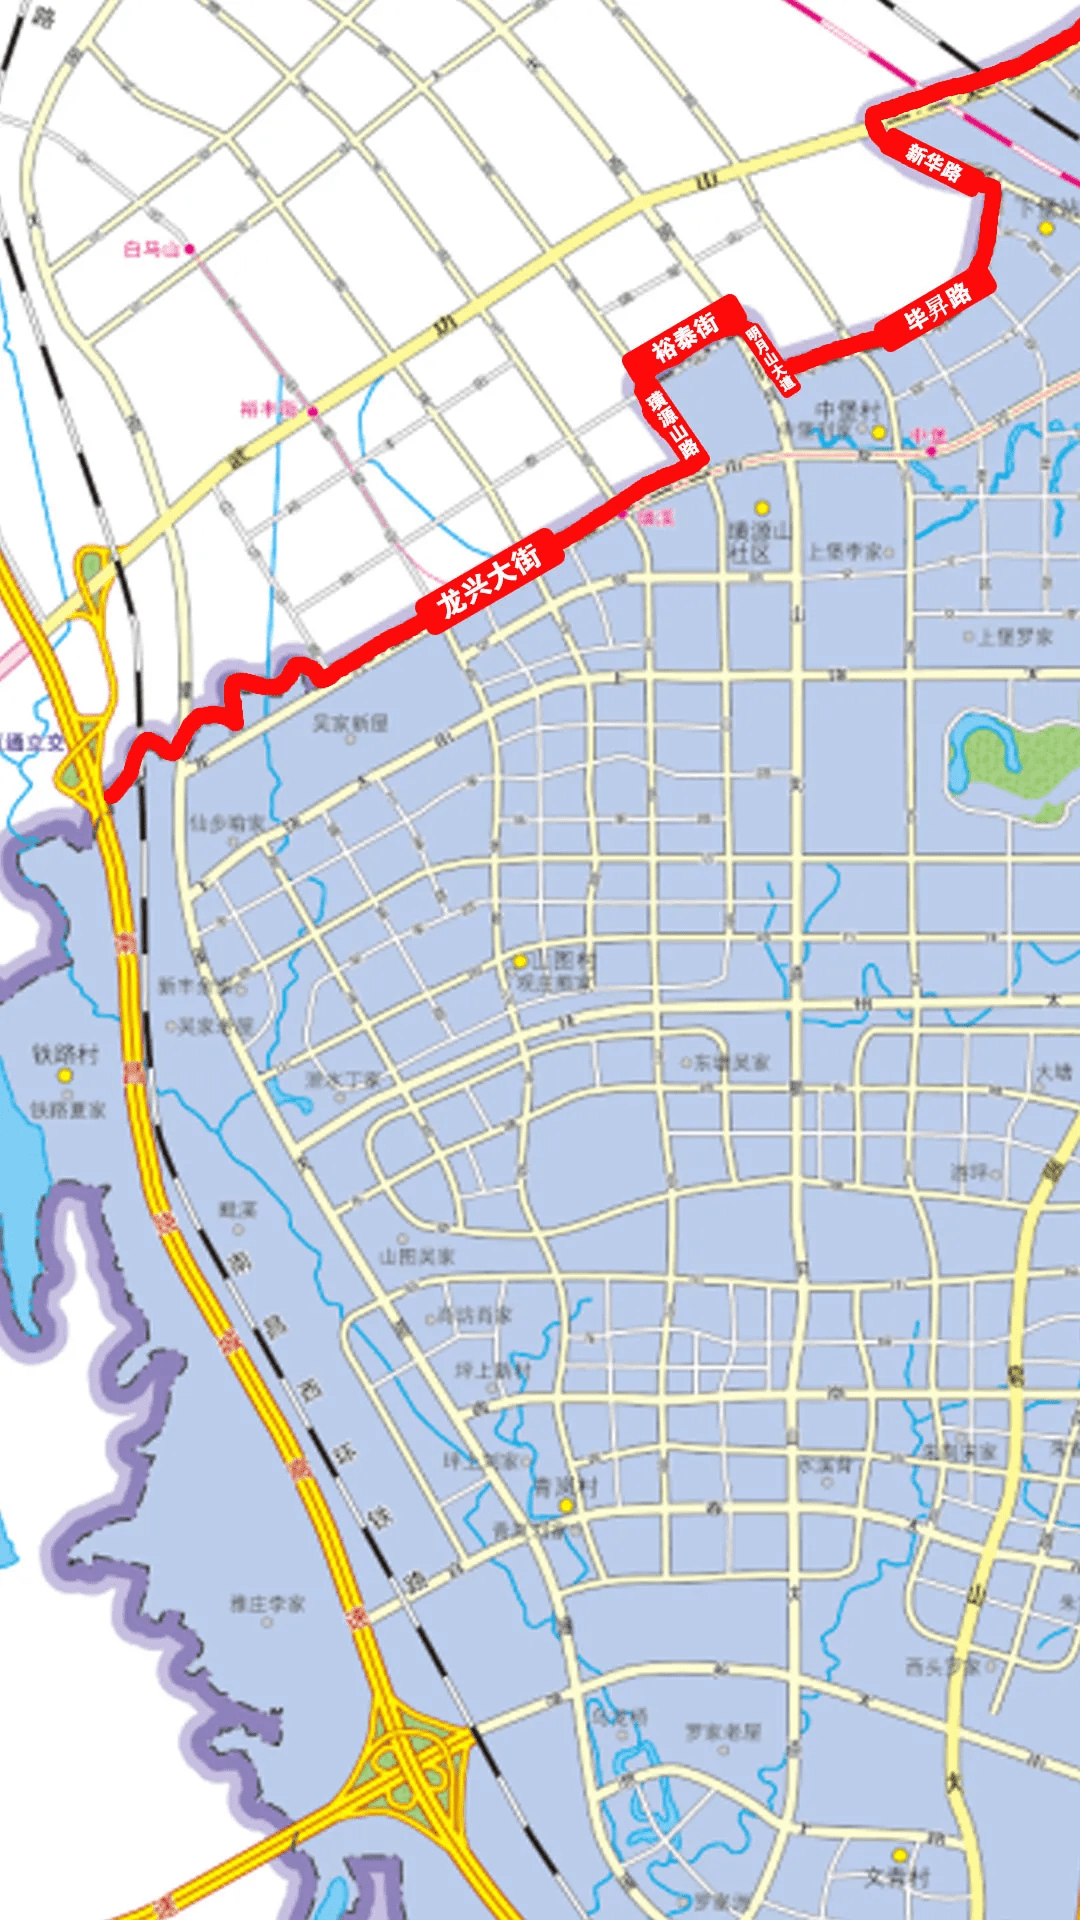 红谷滩区行政区划图公布九龙湖变大与新建区边界明确